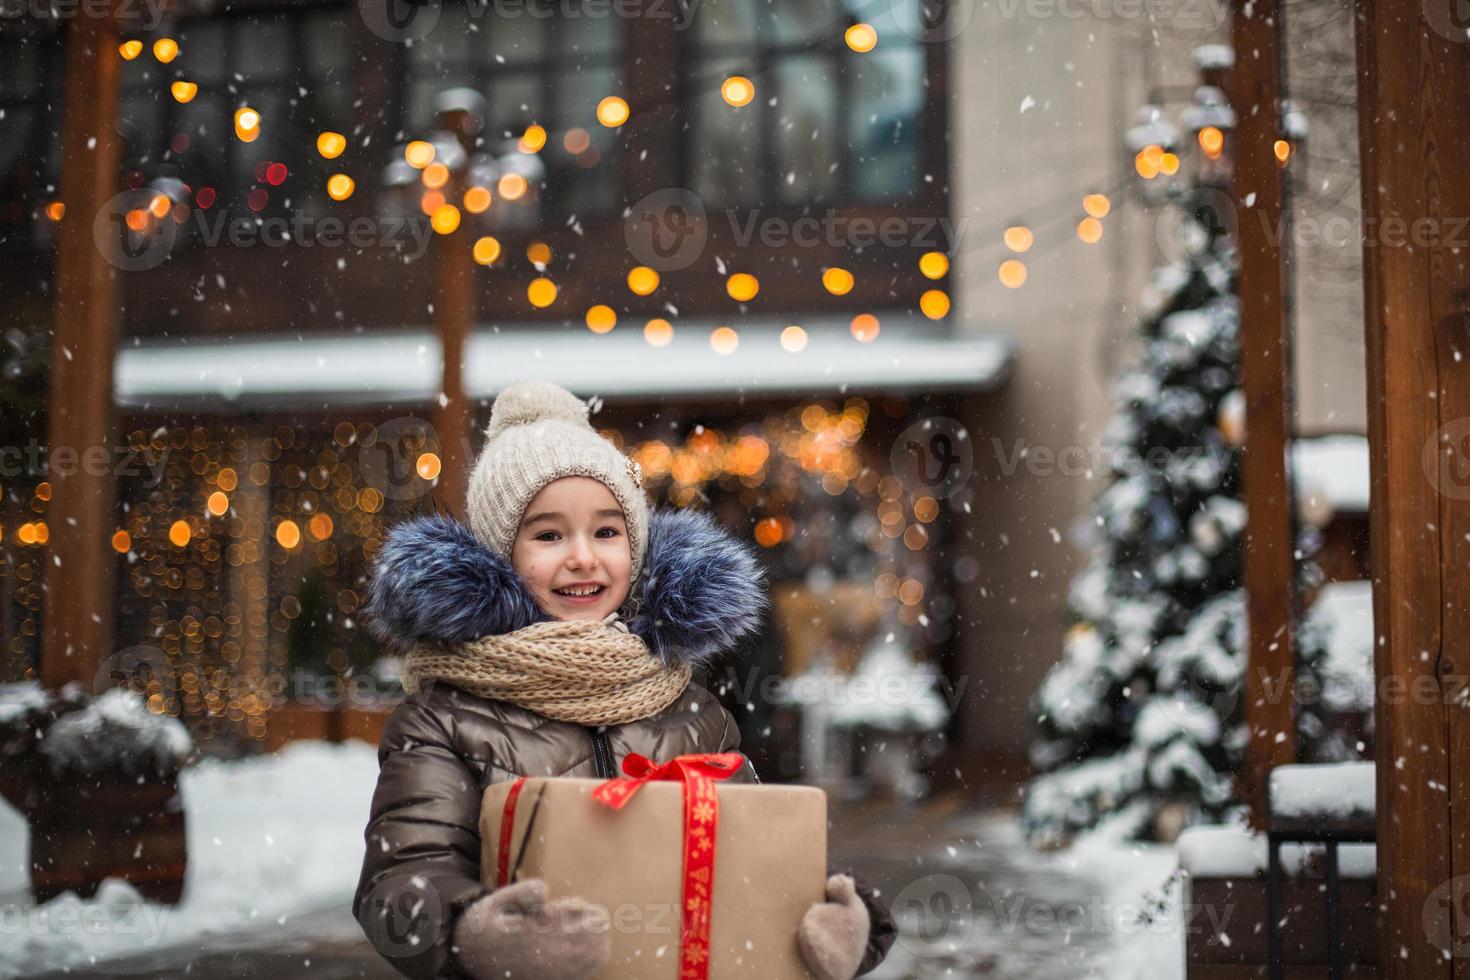 ritratto di ragazza gioiosa con una confezione regalo per natale in una strada cittadina in inverno con la neve in un mercato festivo con decorazioni e lucine. vestiti caldi, cappello lavorato a maglia, sciarpa e pelliccia. Capodanno foto